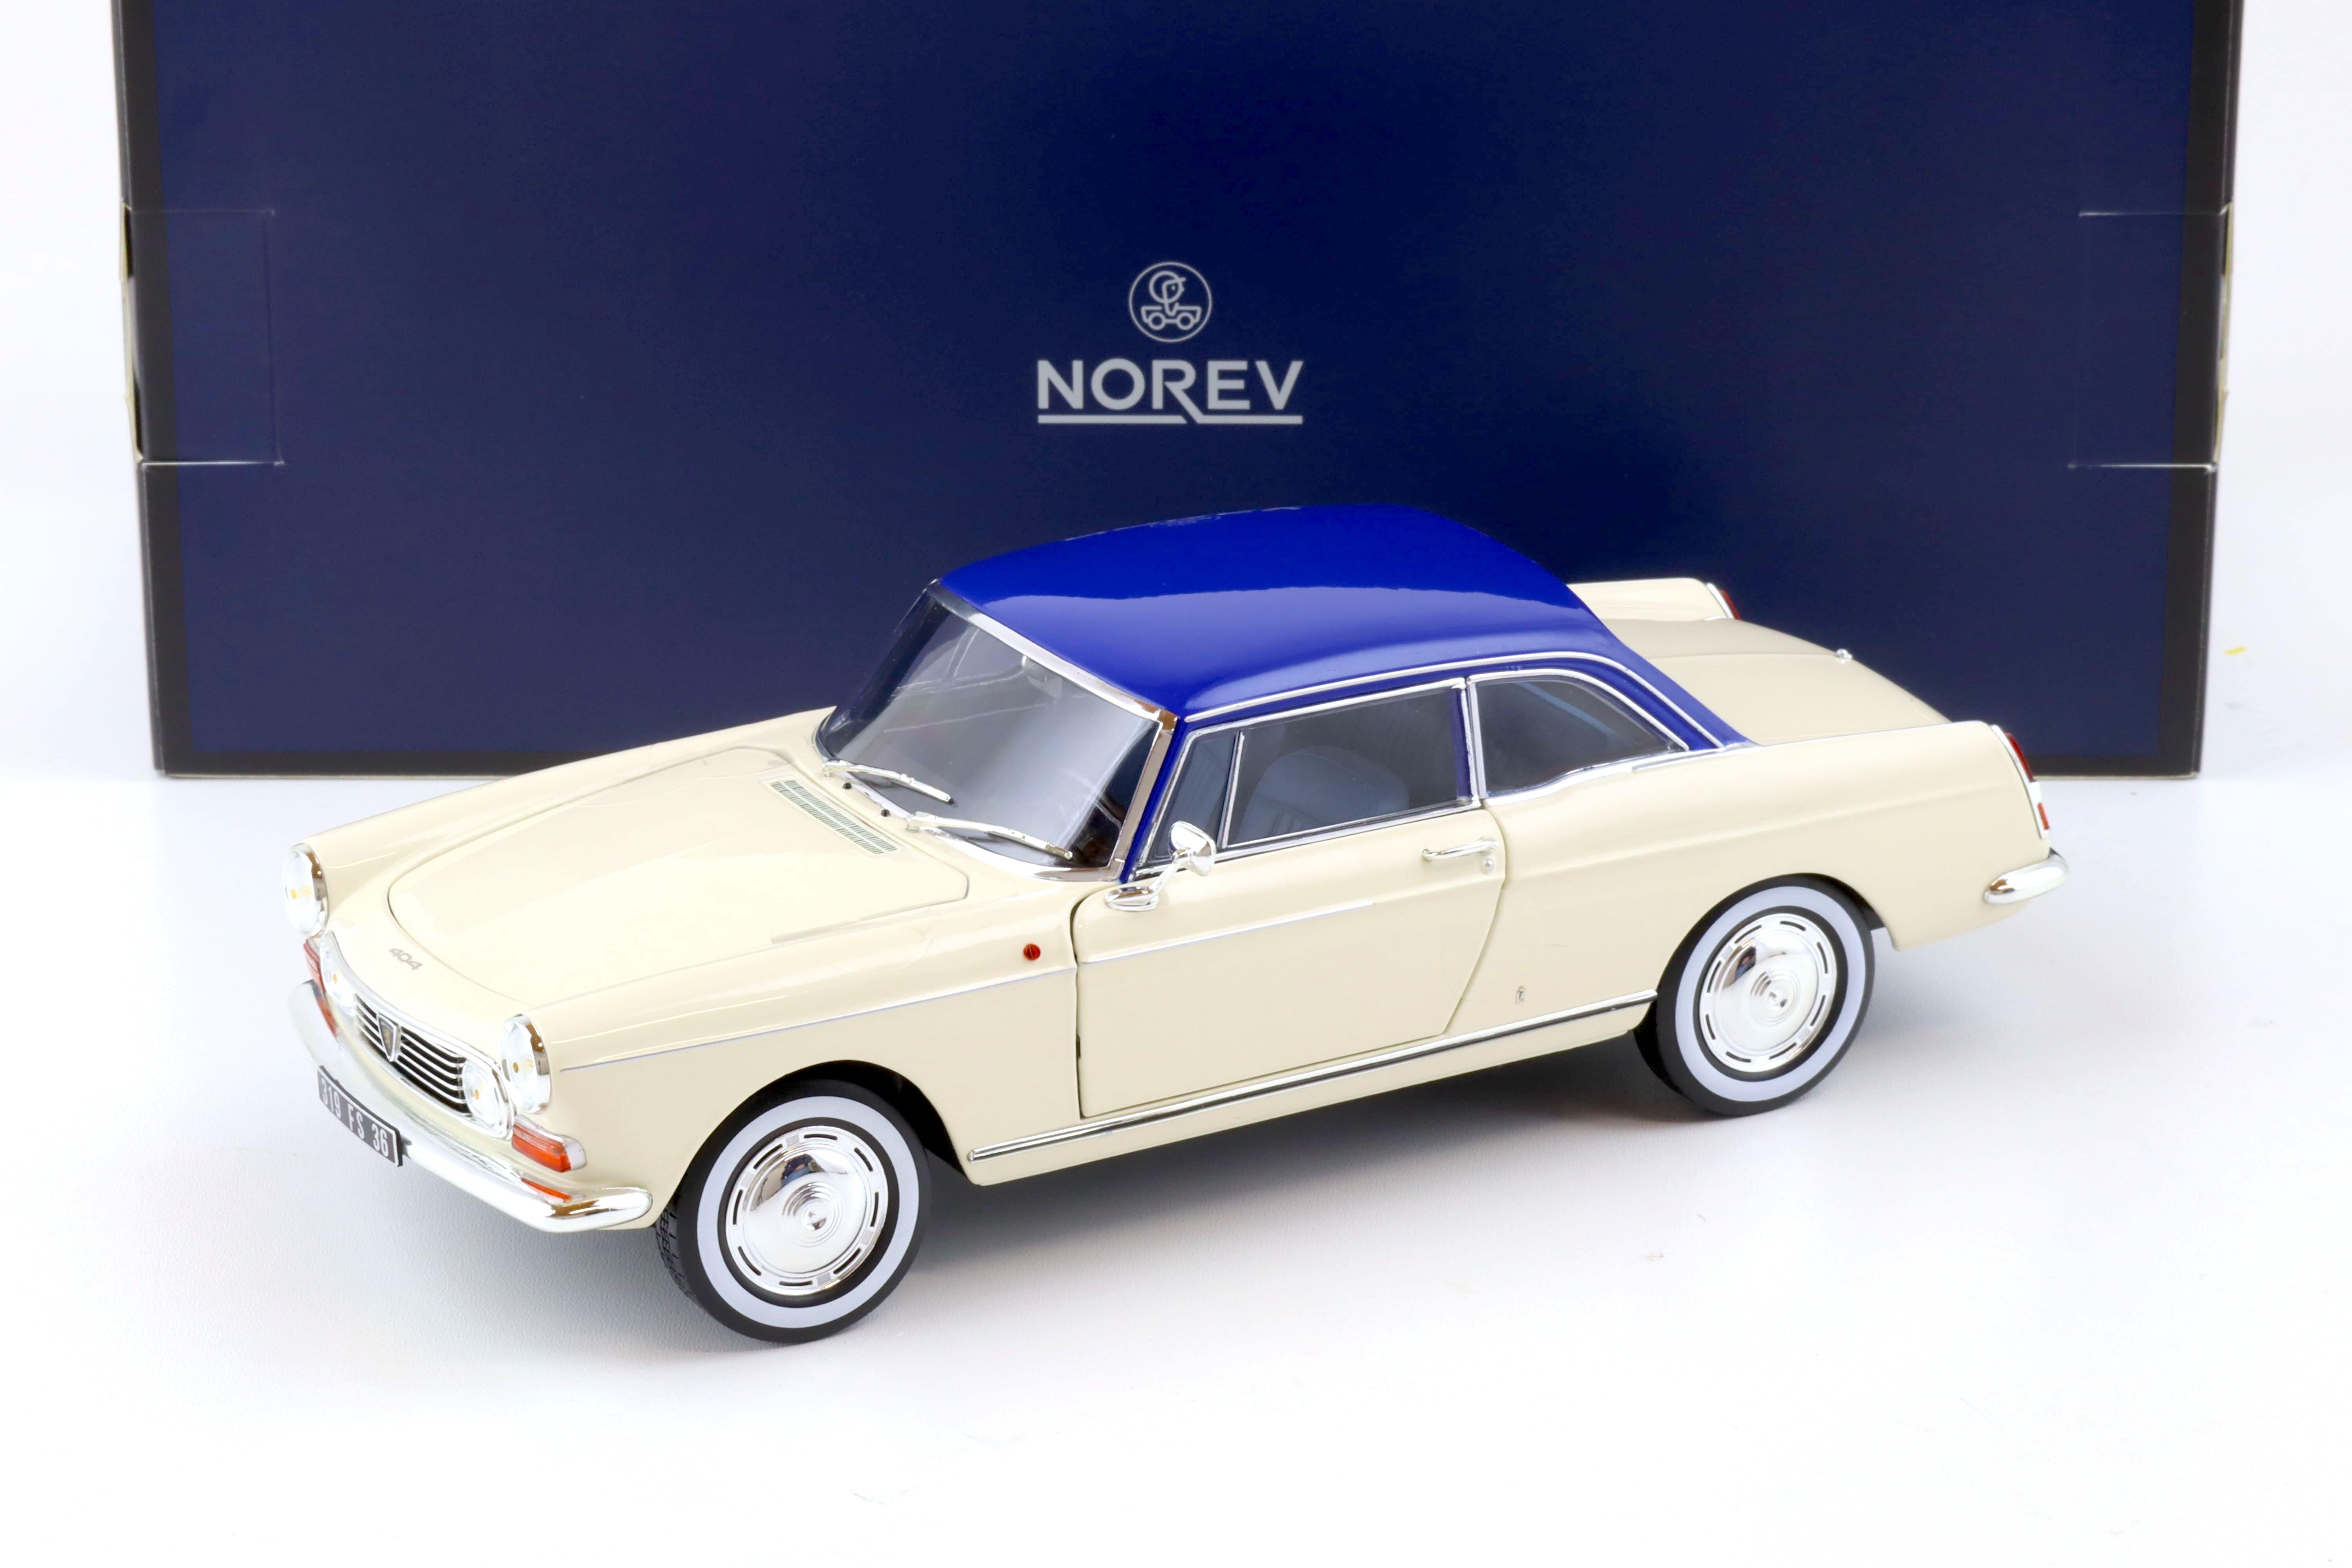 1:18 Norev Peugeot 404 Coupe 1967 cream & blue - Limited 200 pcs.